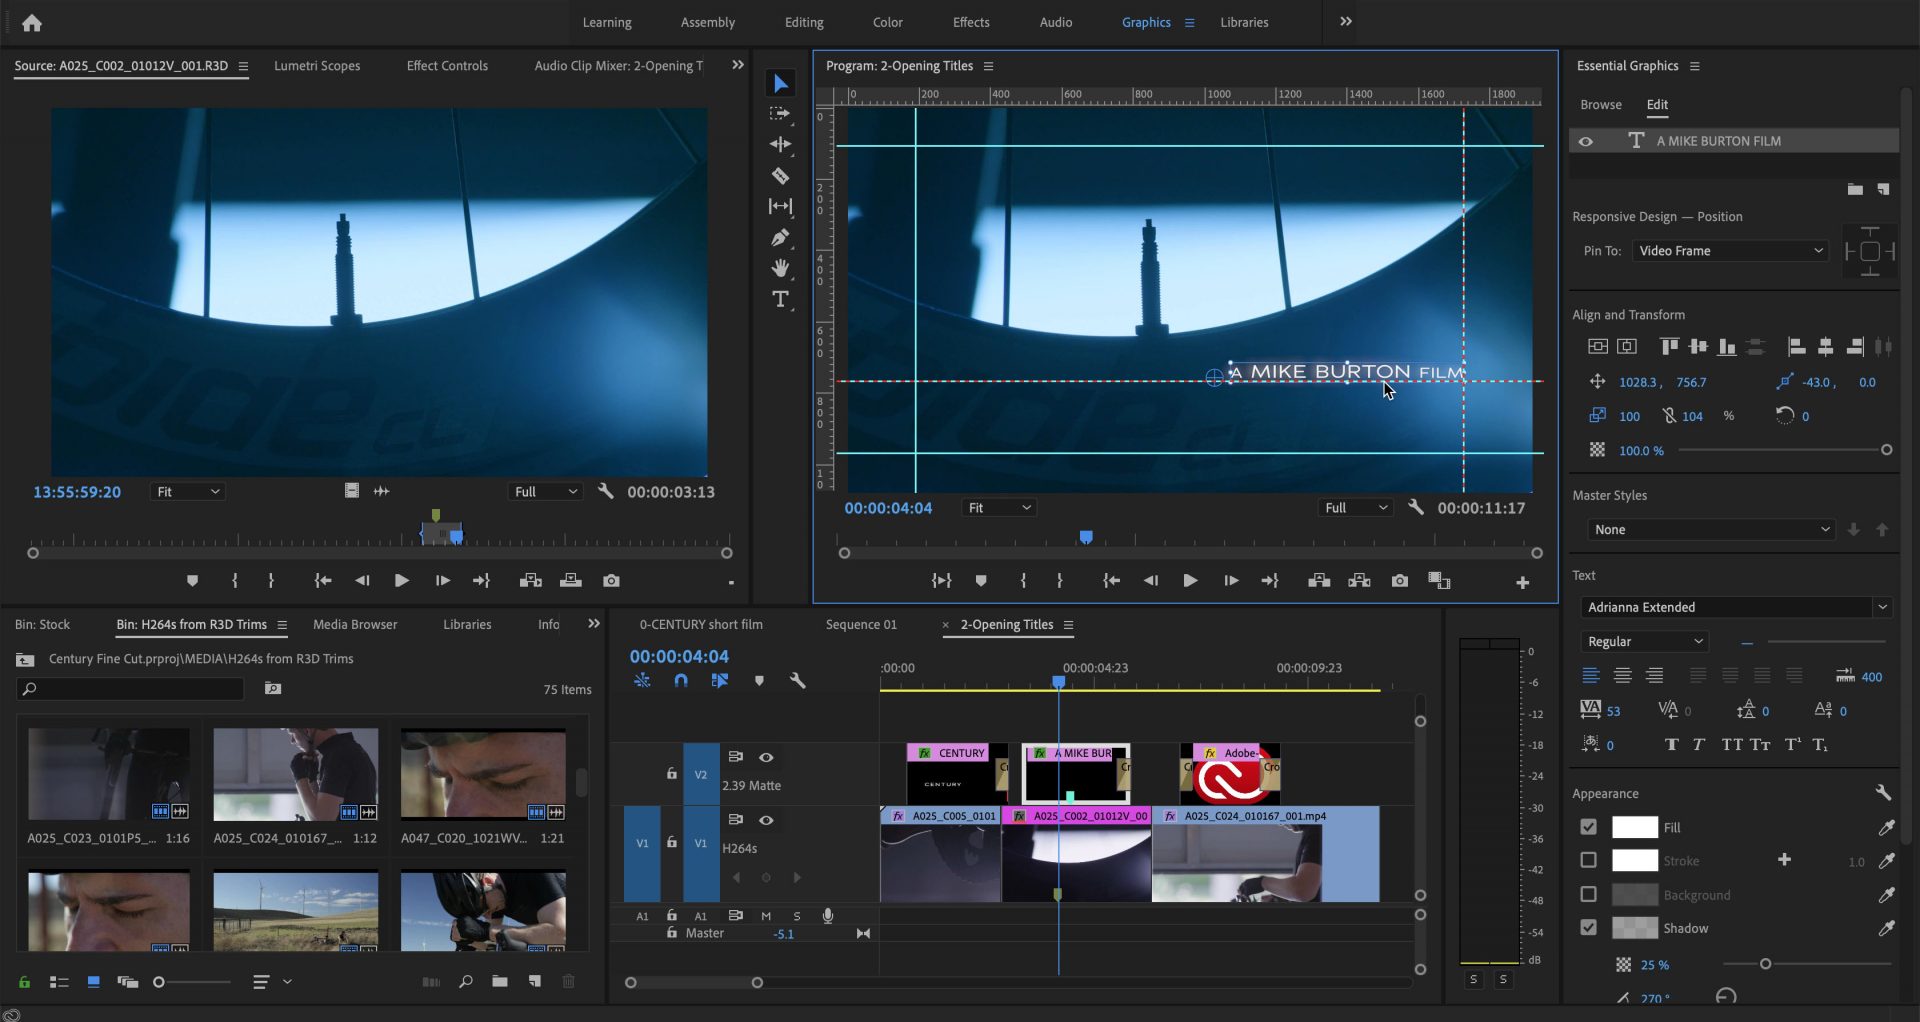 Adobe โชว์ความสามารถใหม่ใน Creative Cloud ทั้งลบวัตถุในวิดีโอ จัดระเบียบสร้าง Storyboard!